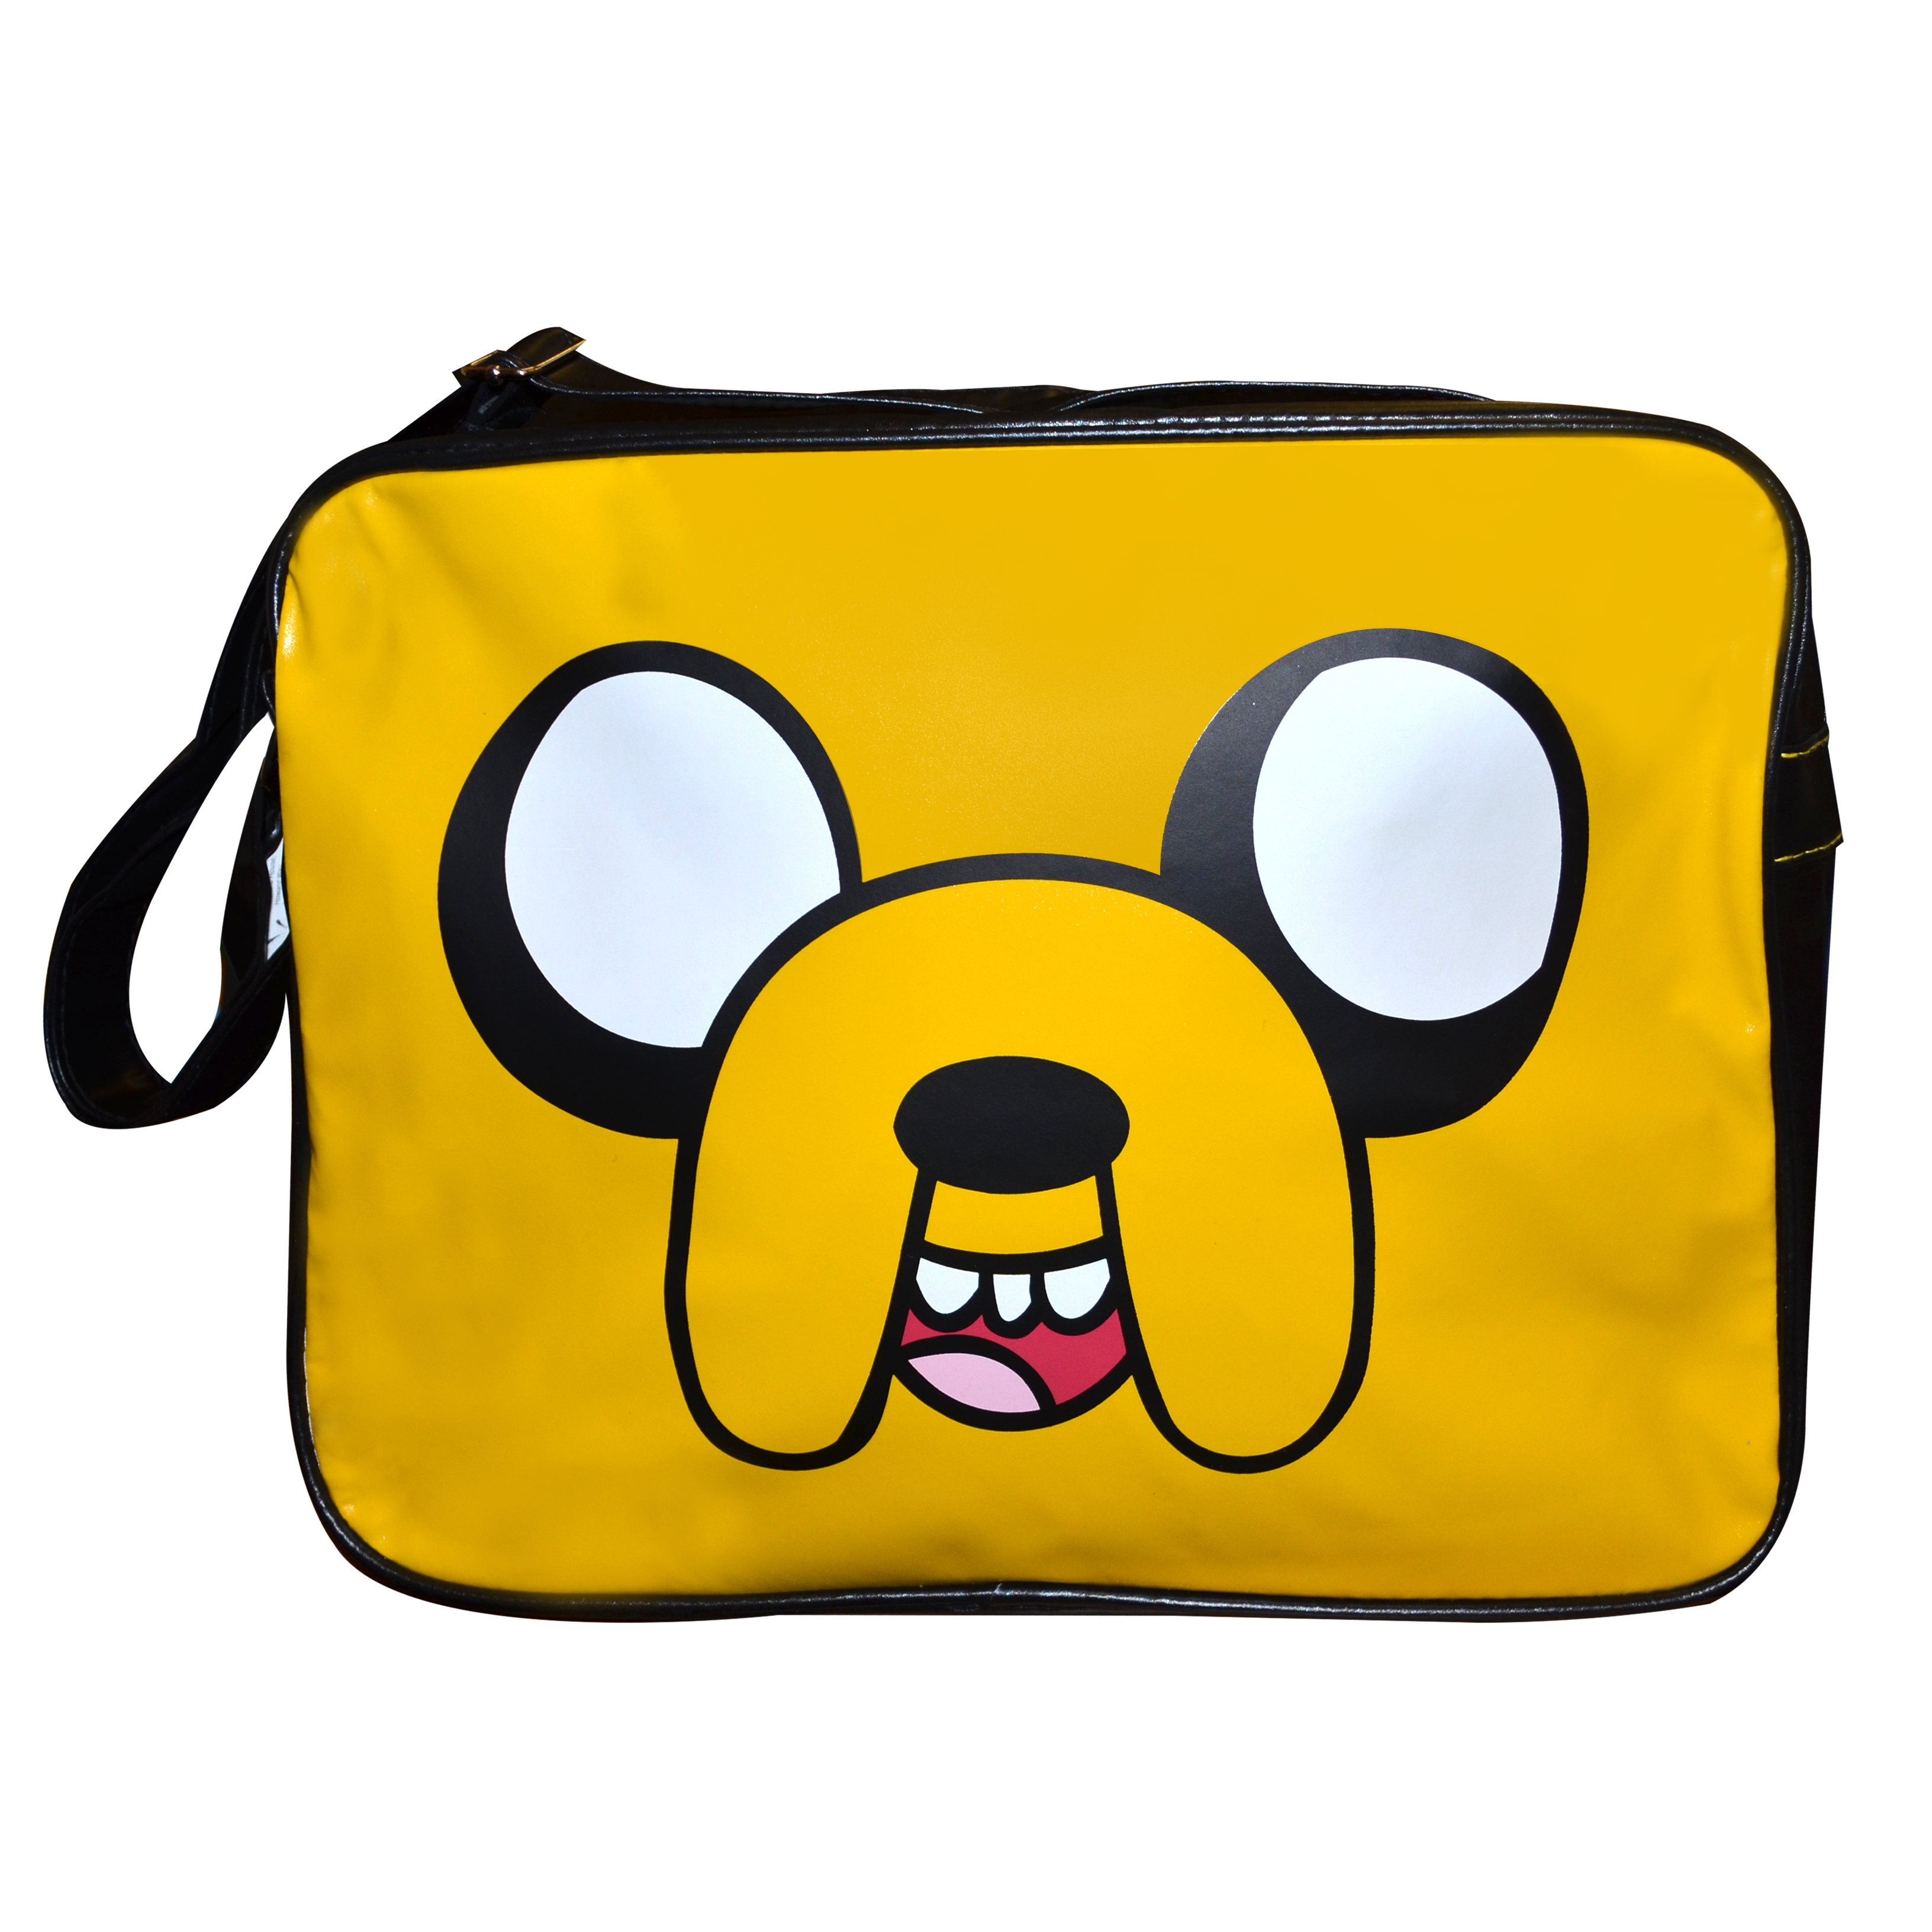 Adventure Time 'Jake The Dog' School Shoulder Bag